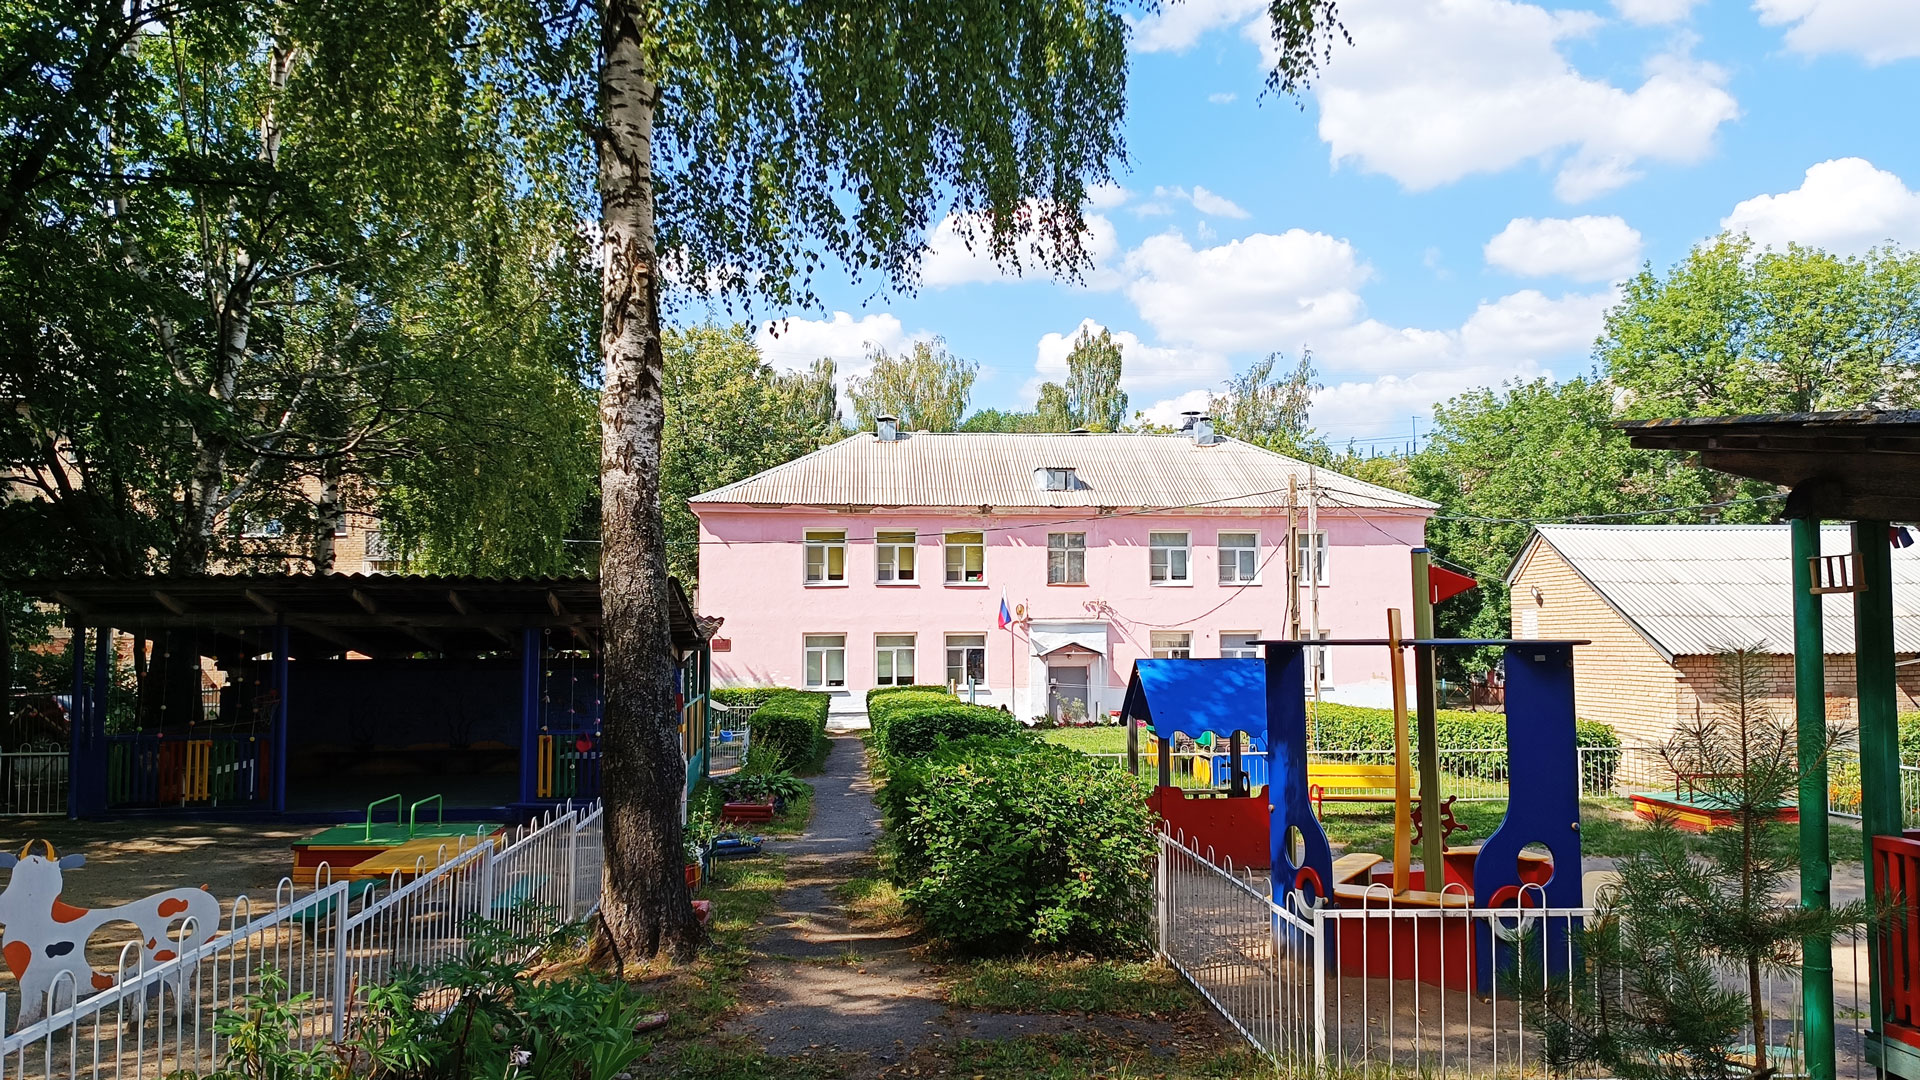 Детский сад 243 Ярославль: общий вид здания.